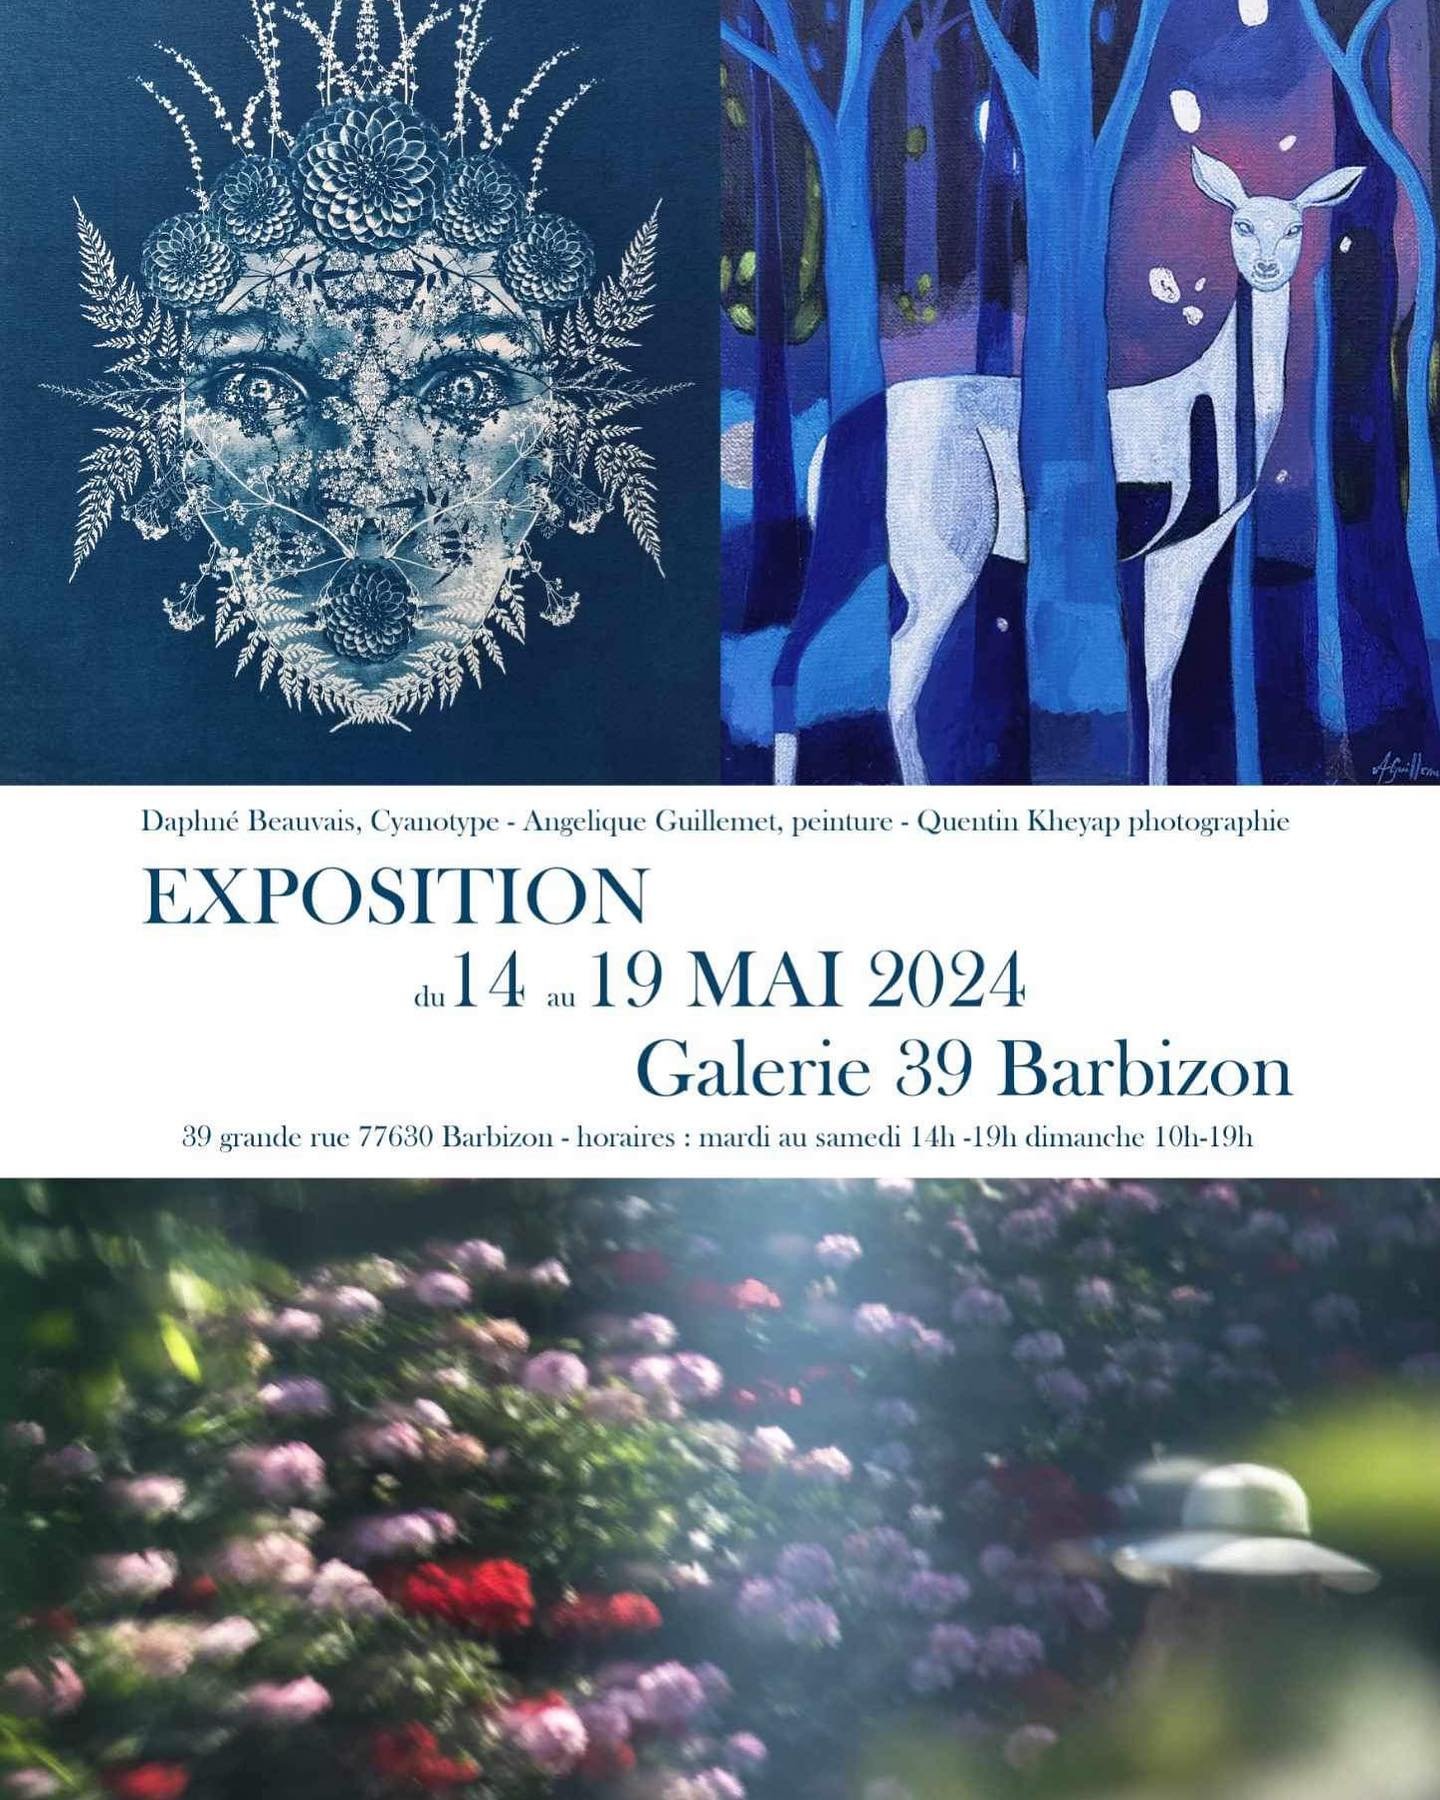 Nouvelle expo 💙

Convergences de nos univers &agrave; la Galerie 39 de Barbizon !

Du 14 au 19 mai avec @daphnebeauvais et @quentinzankheyap 

Au plaisir de vous accueillir 🌿

(Je serai pr&eacute;sente samedi 18 et dimanche 19 mai)

#art #expo #gal